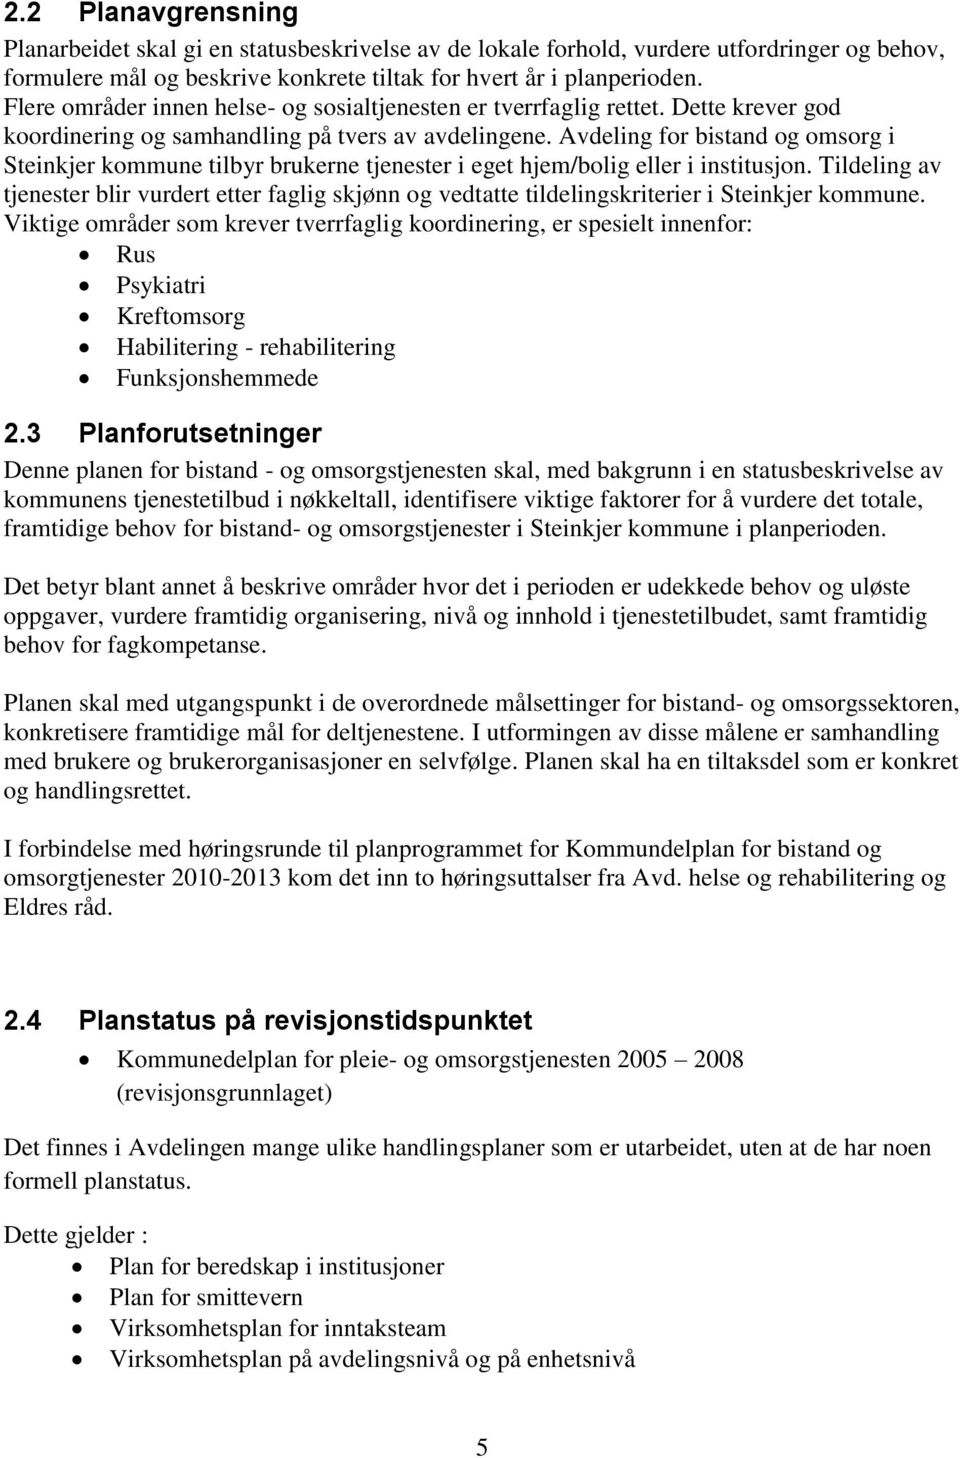 Avdeling for bistand og omsorg i Steinkjer kommune tilbyr brukerne tjenester i eget hjem/bolig eller i institusjon.